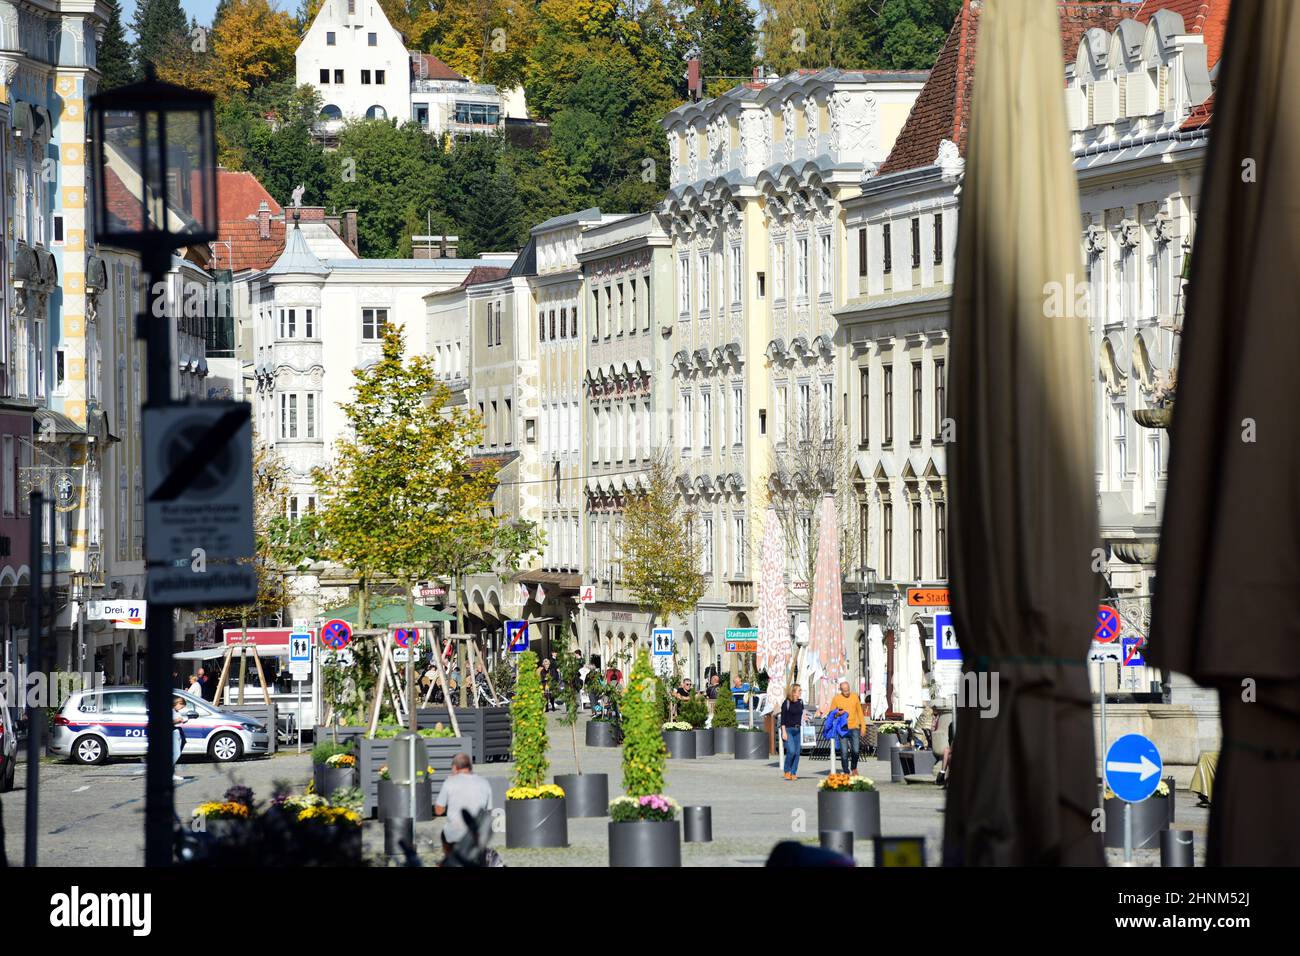 Der Stadtplatz der alten Industriestadt Steyr, Österreich, Europa - La plaza de la antigua ciudad industrial de Steyr, Austria, Europa Foto de stock